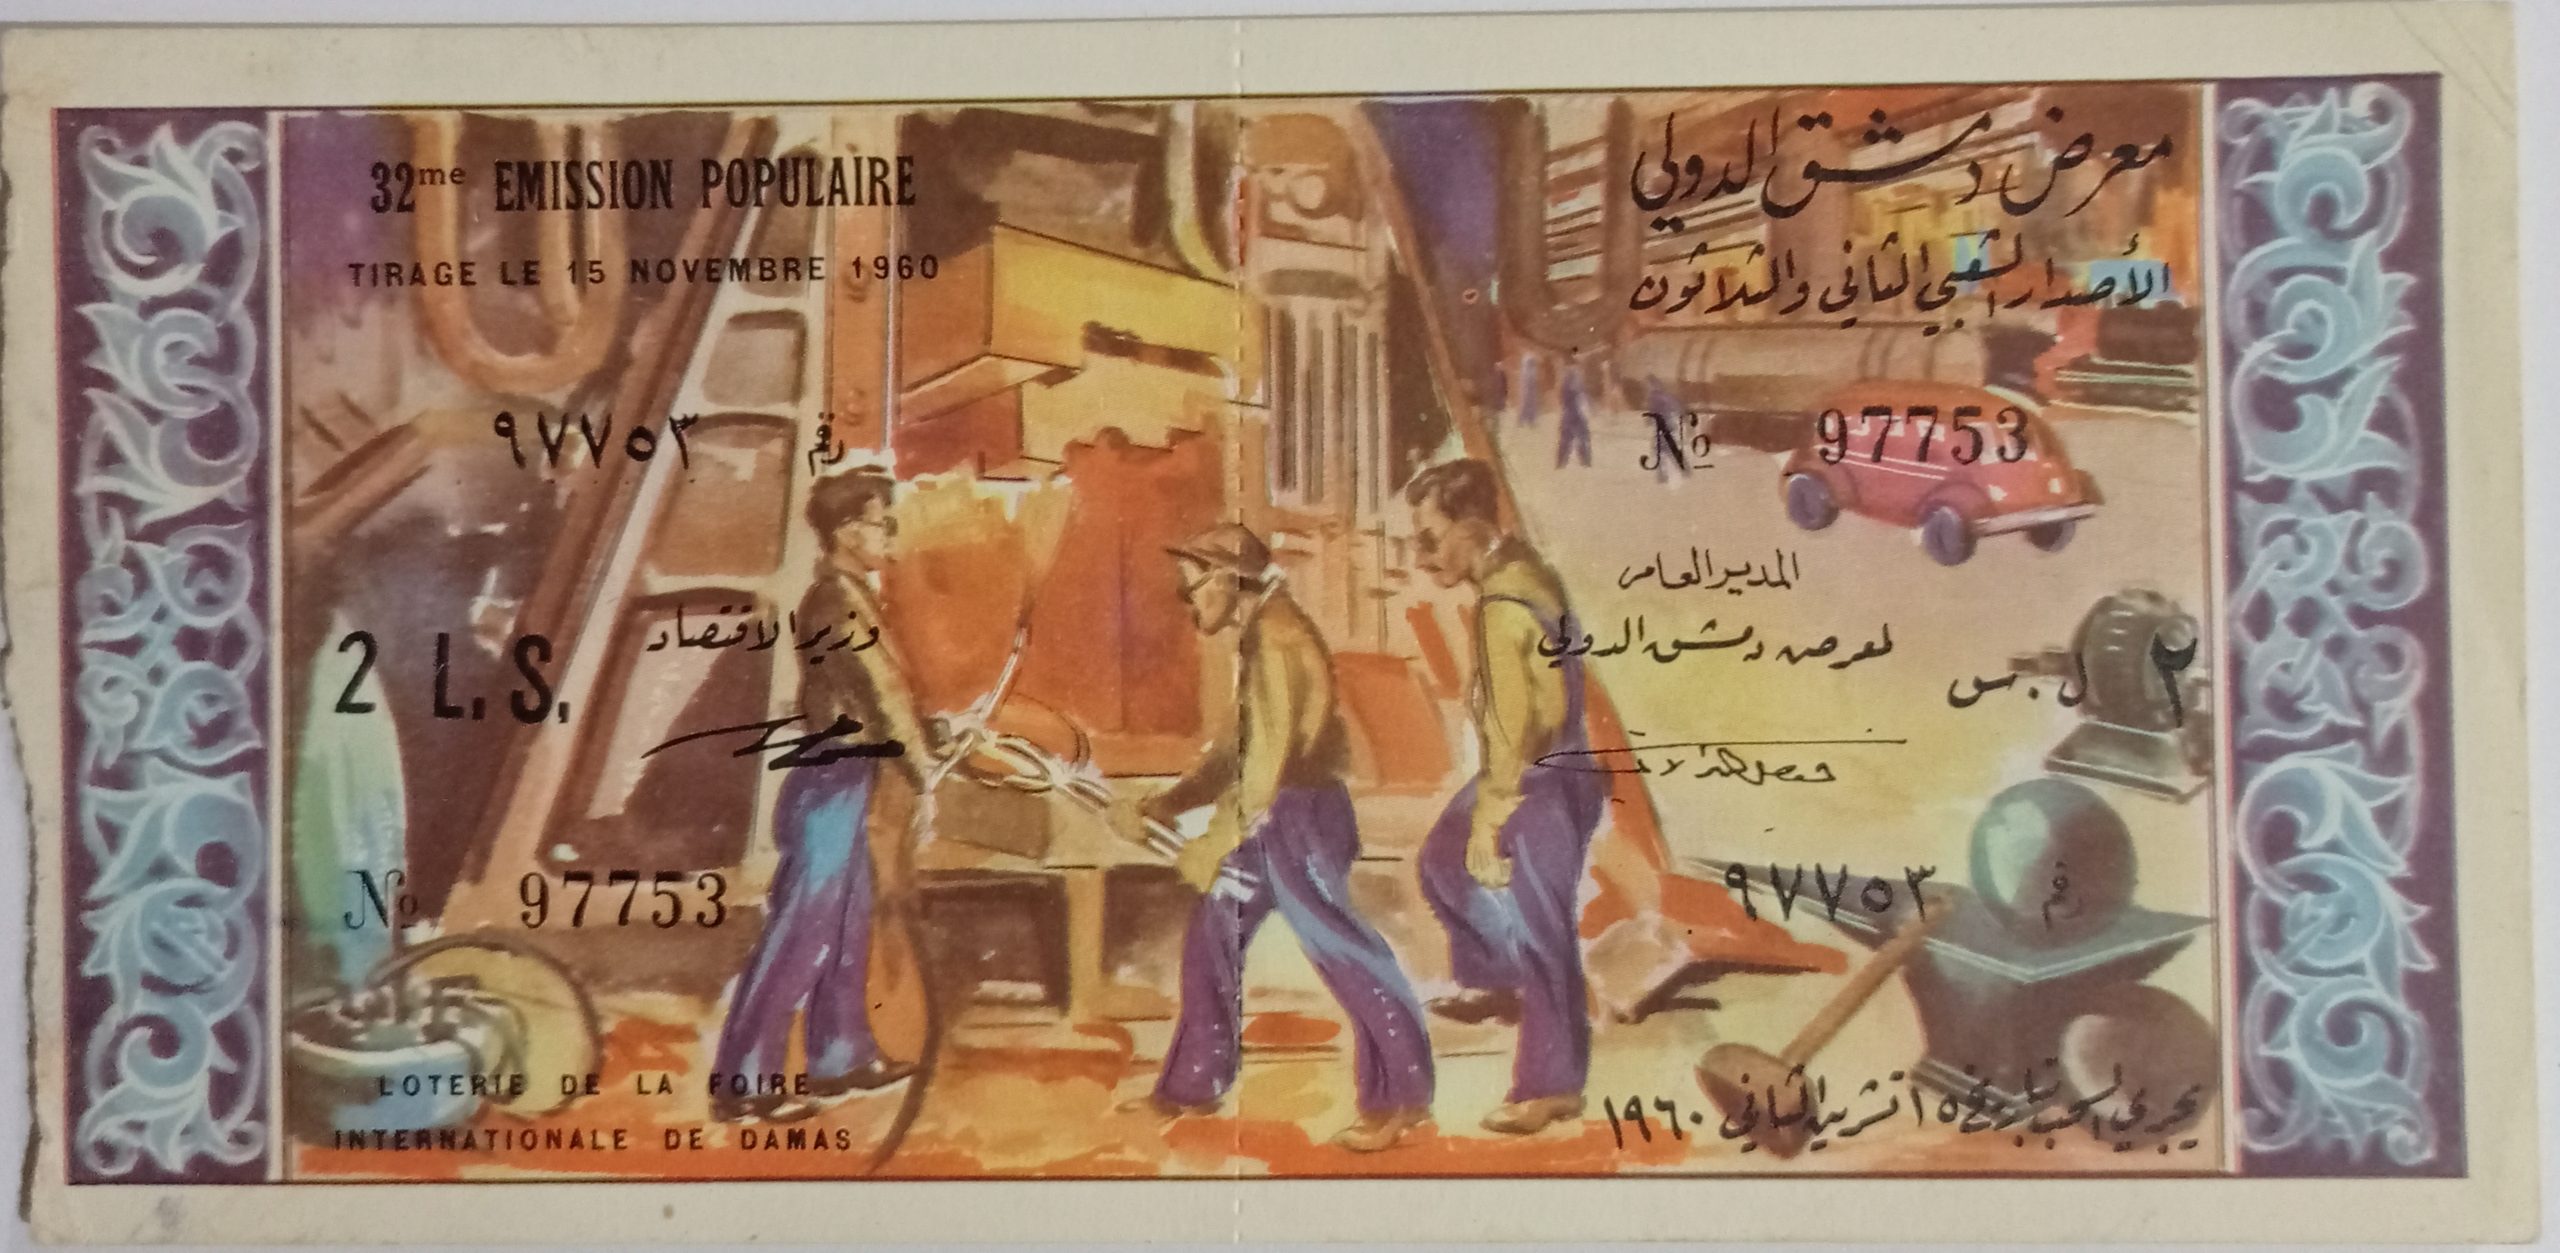 التاريخ السوري المعاصر - يانصيب معرض دمشق الدولي - الإصدار الشعبي الثاني والثلاثون عام 1960